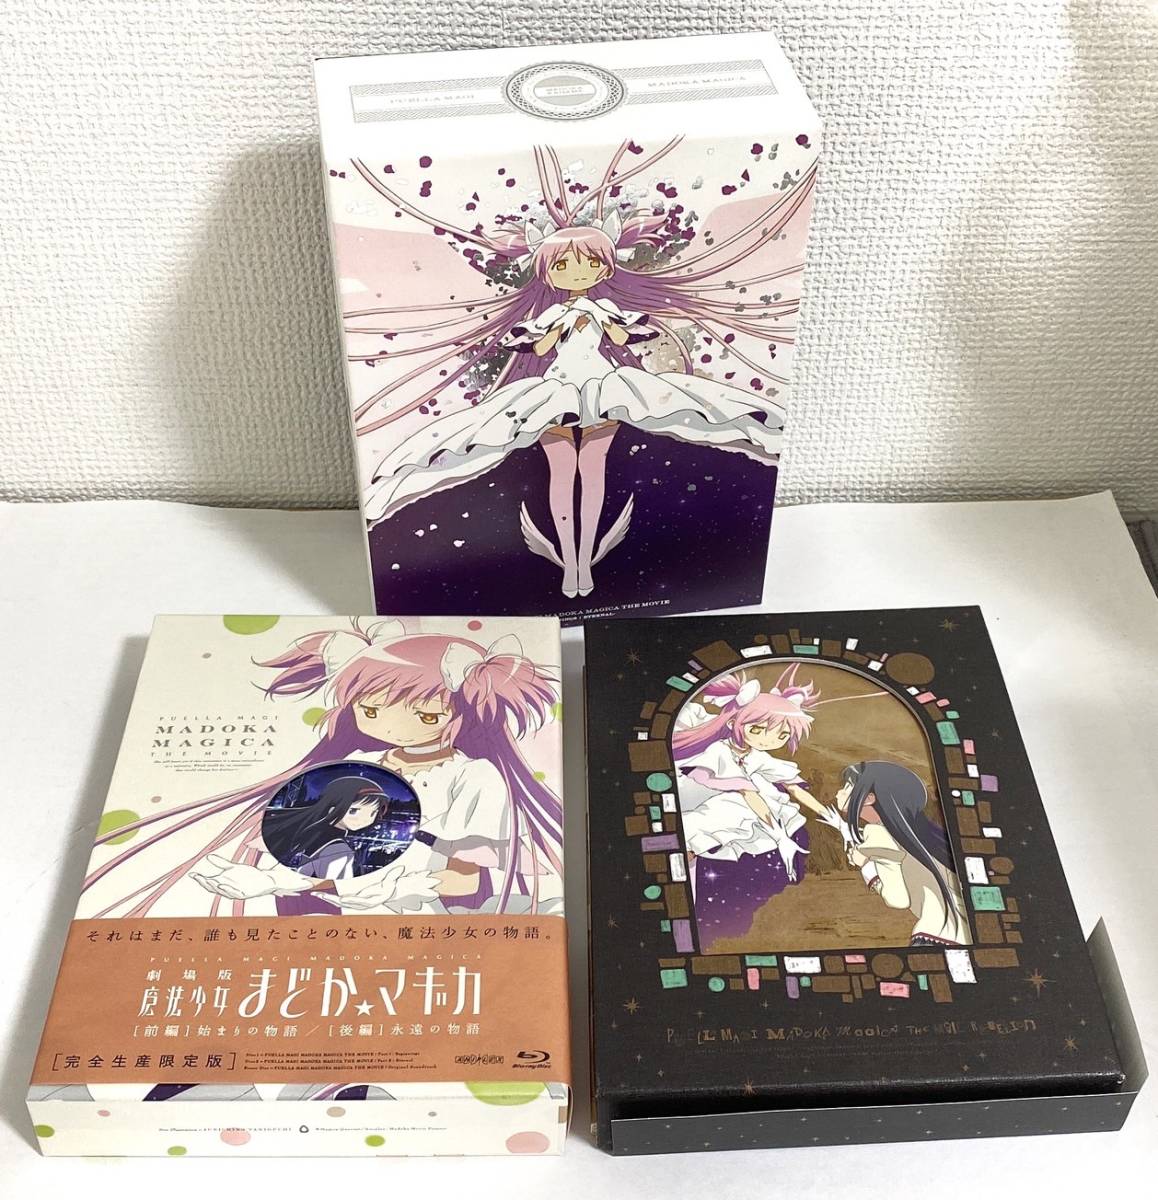 魔法少女まどか☆マギカ【完全生産限定版】 Blu-ray 全6巻 ボックス付